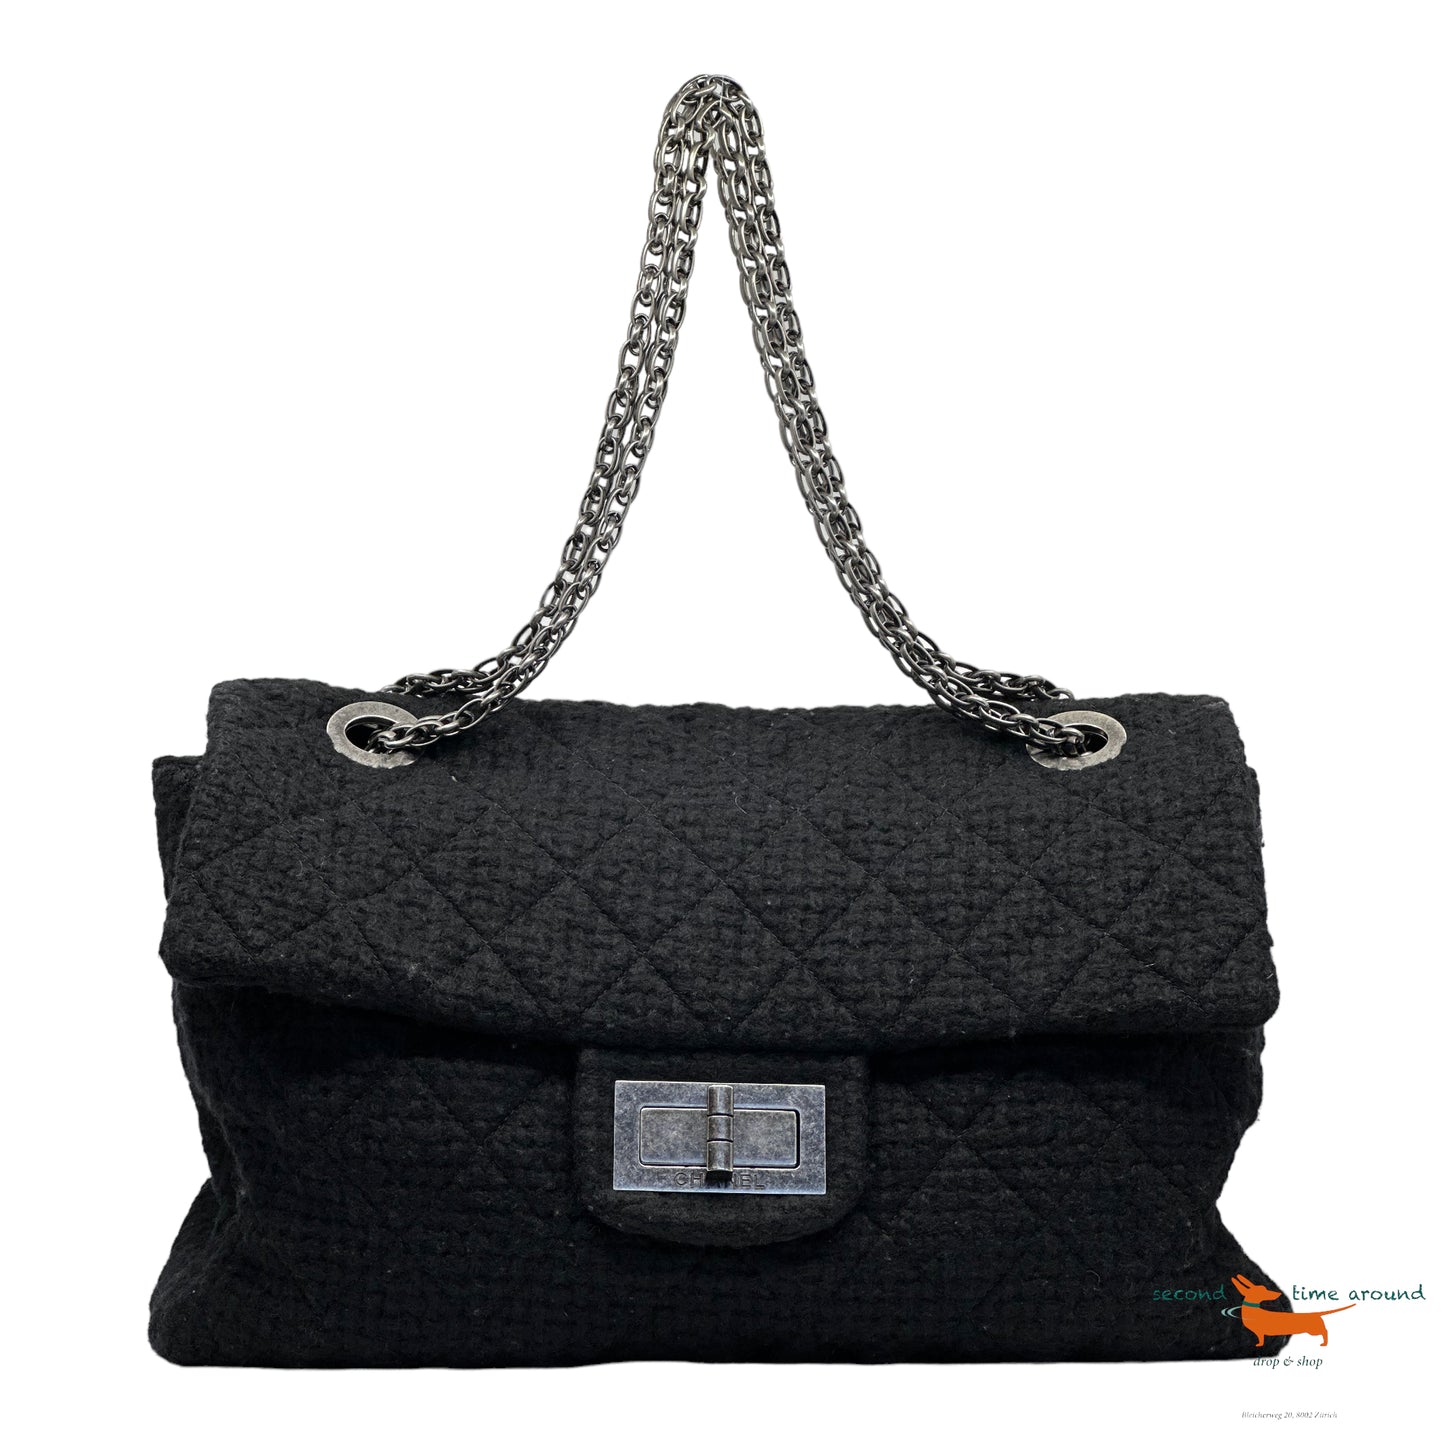 Chanel 2.55 large shoulder bag in black Tweed